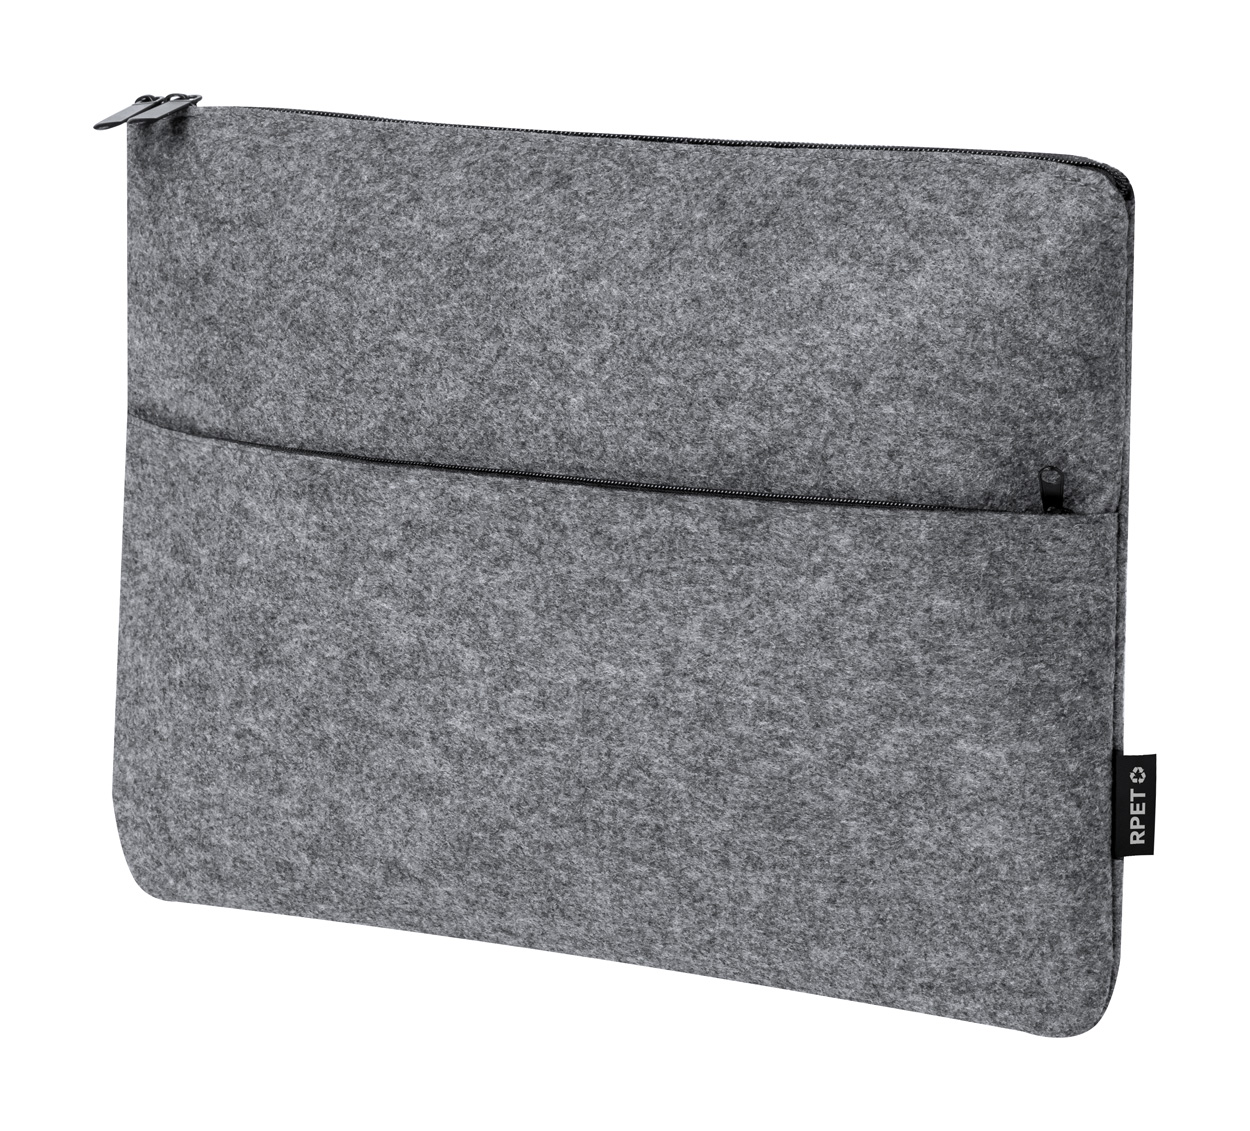 Ginax laptop case - grey